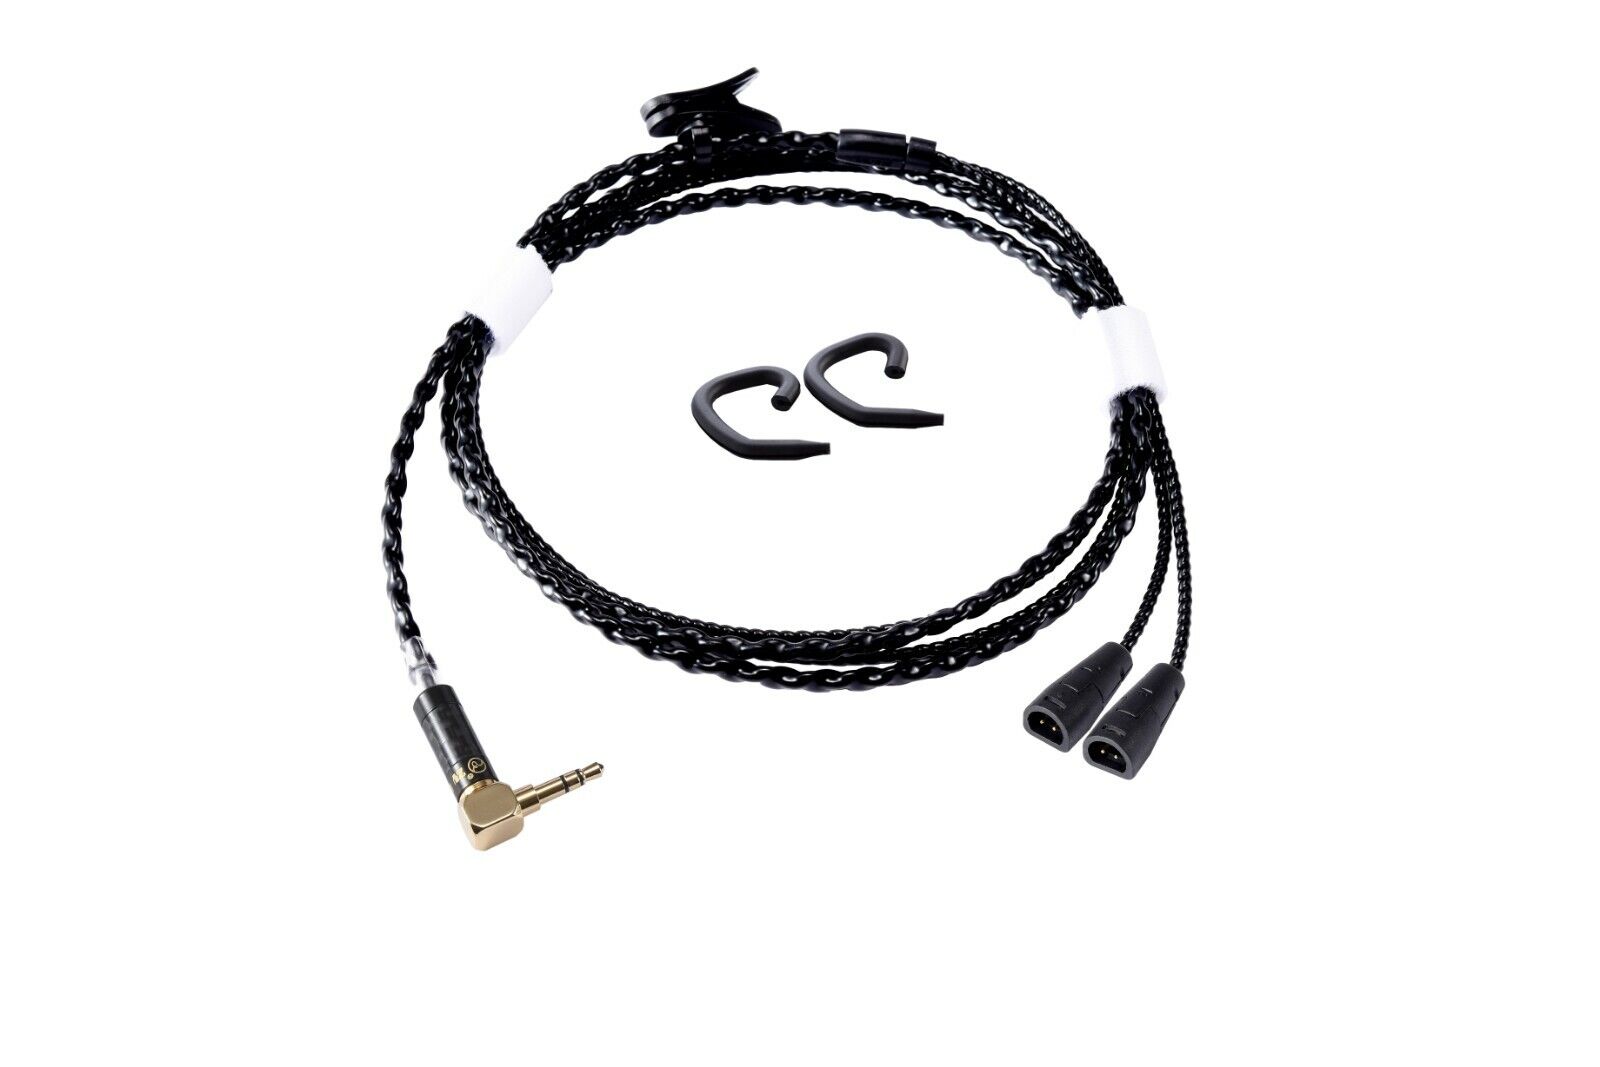 Cable de actualización de alta fidelidad Artesanal Auricular Reemplazo para Sennheiser IE8 8i IE80S IE80